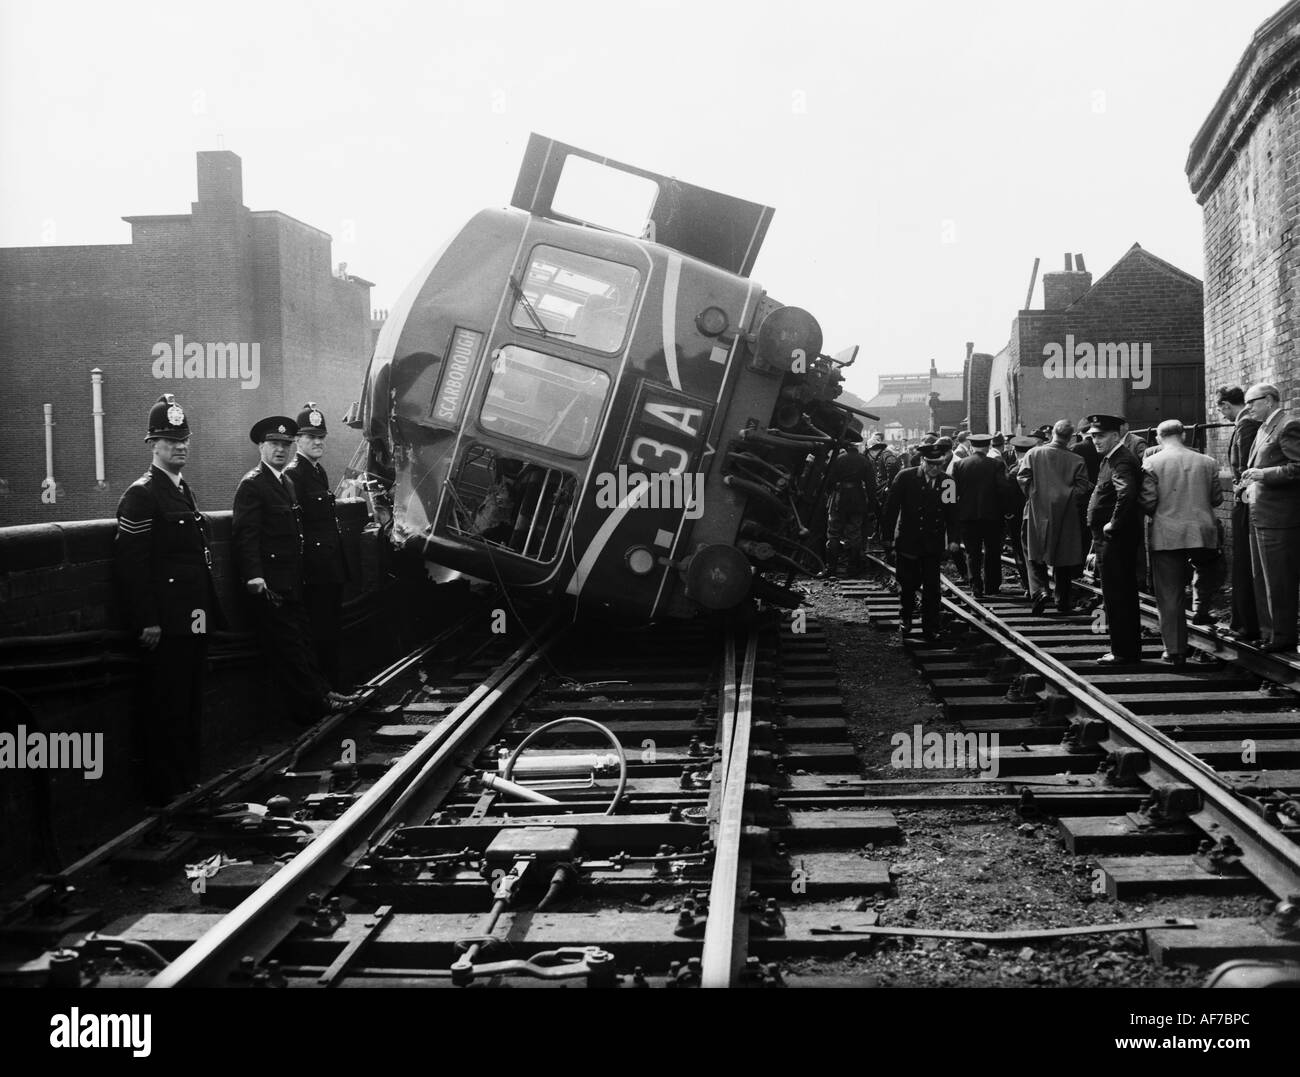 Vintage photographie en noir et blanc d'une foule de personnes y compris l'affichage de la police de locomotive a déraillé sur le côté incliné. Banque D'Images